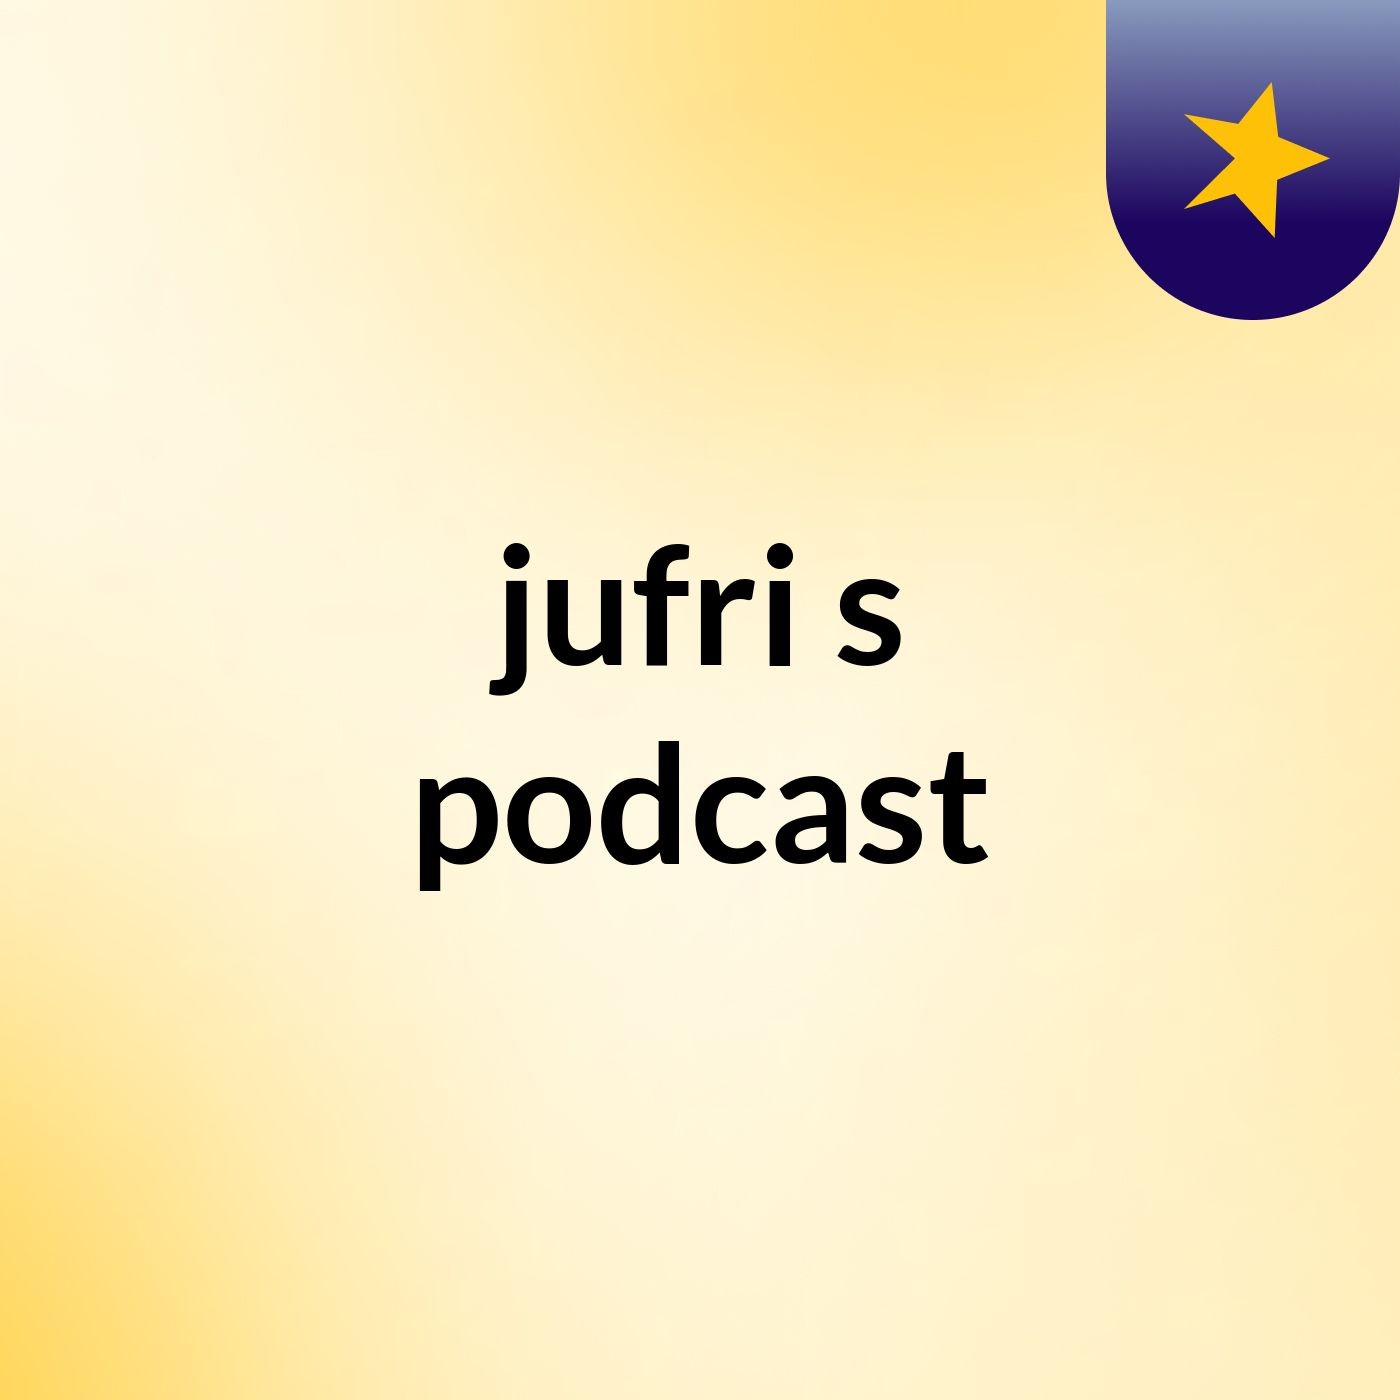 jufri's podcast